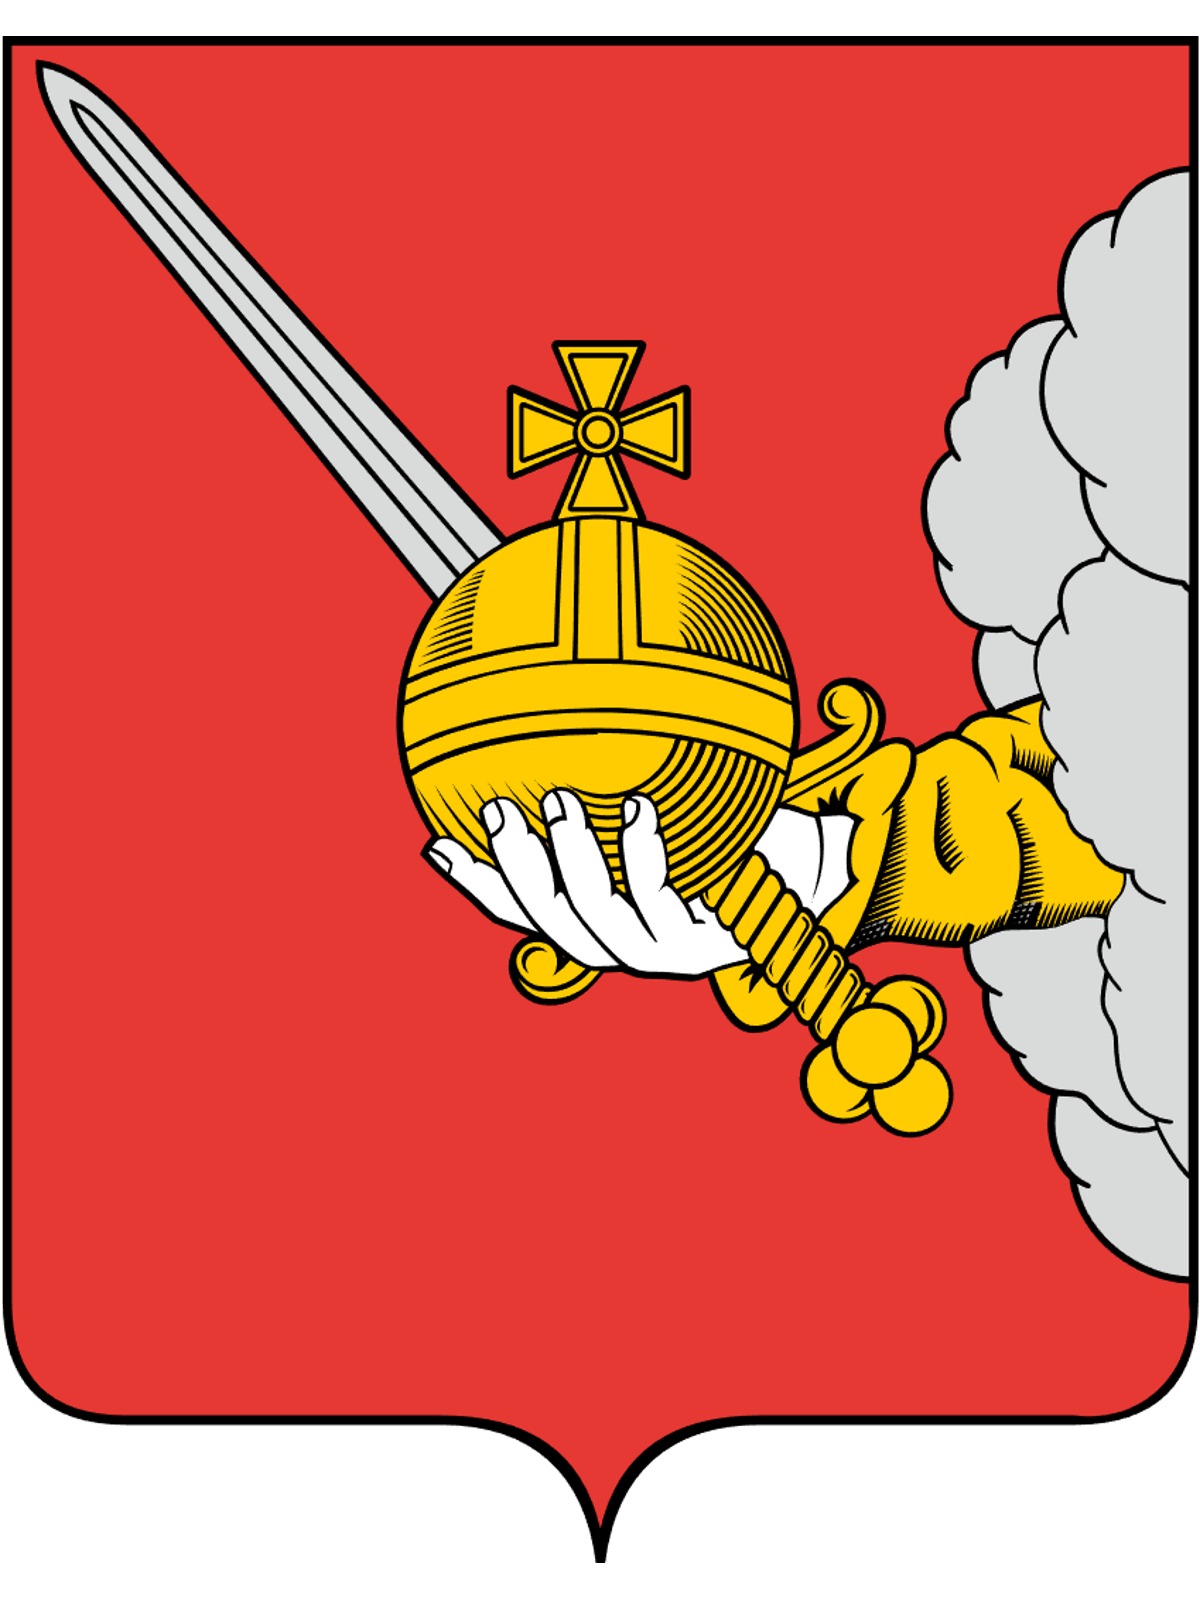 Герб города Вологды